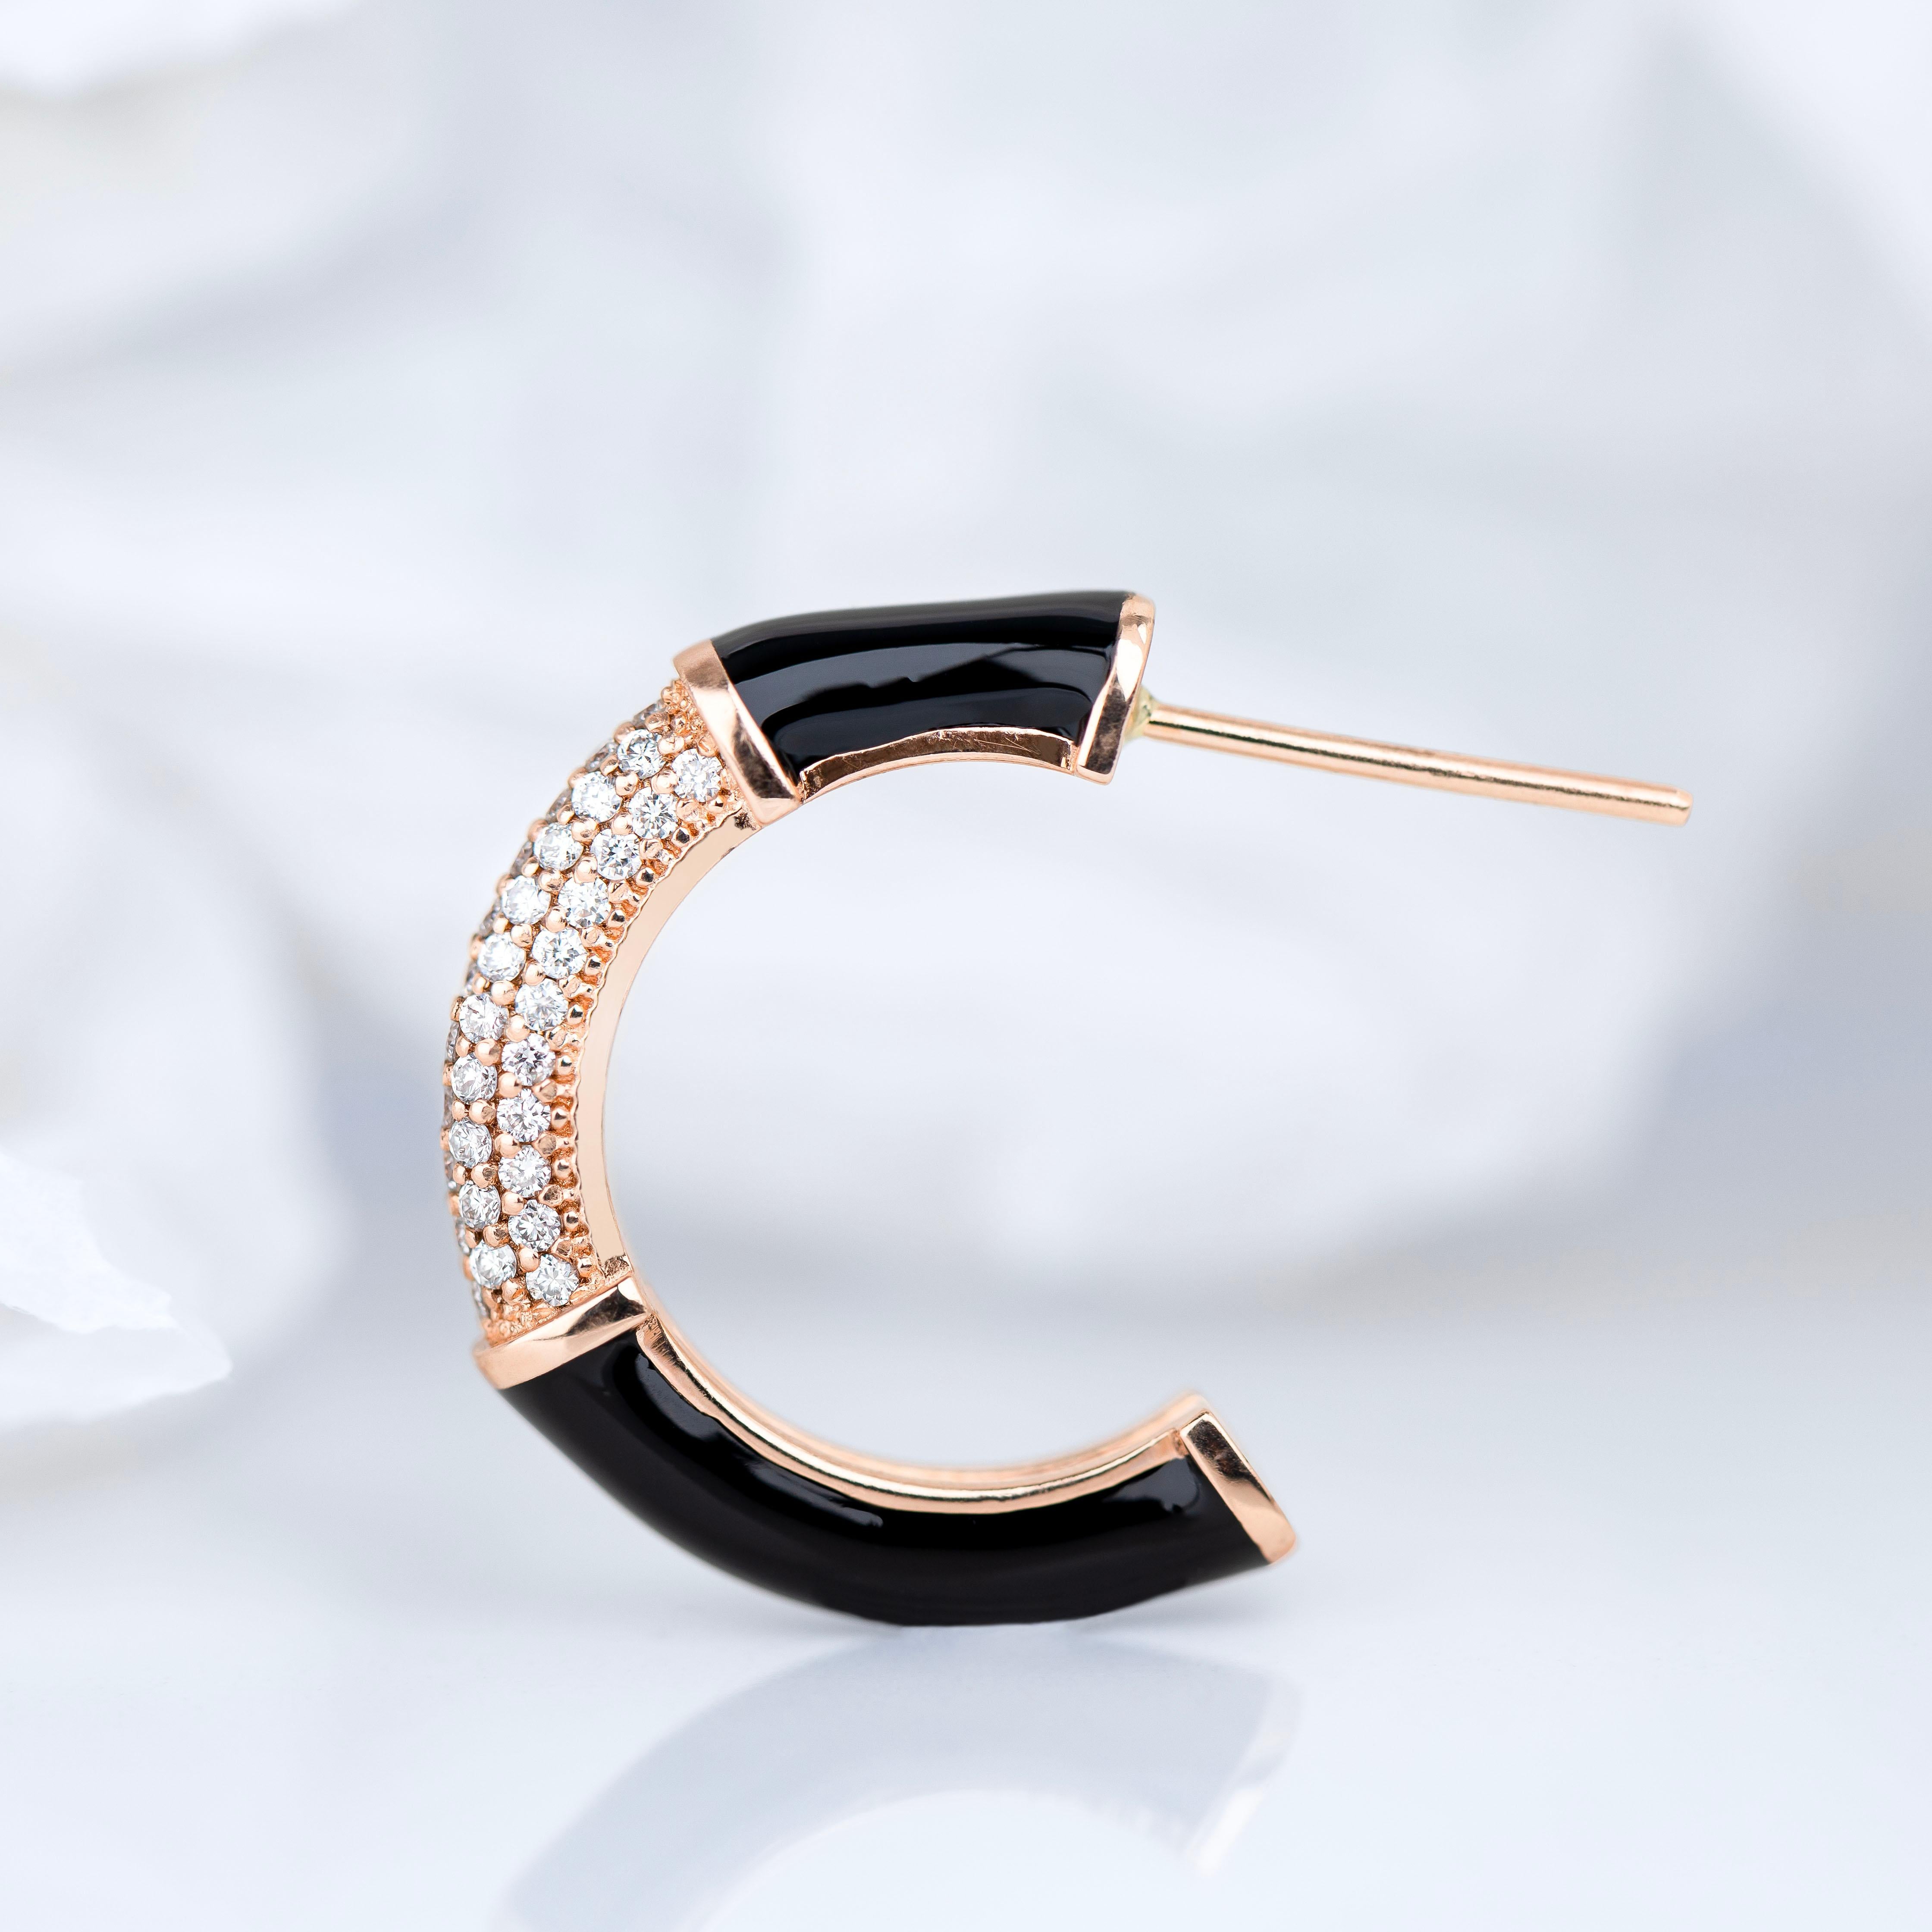 Art Deco StilOhrring aus Gold mit Diamantstein, Hummelfarben-Ohrring

Dieser Ring wurde aus hochwertigen MATERIALEN und in hervorragender Handarbeit hergestellt. Ich garantiere für die Qualitätssicherung meiner Handarbeit und meiner MATERIALIEN. Für